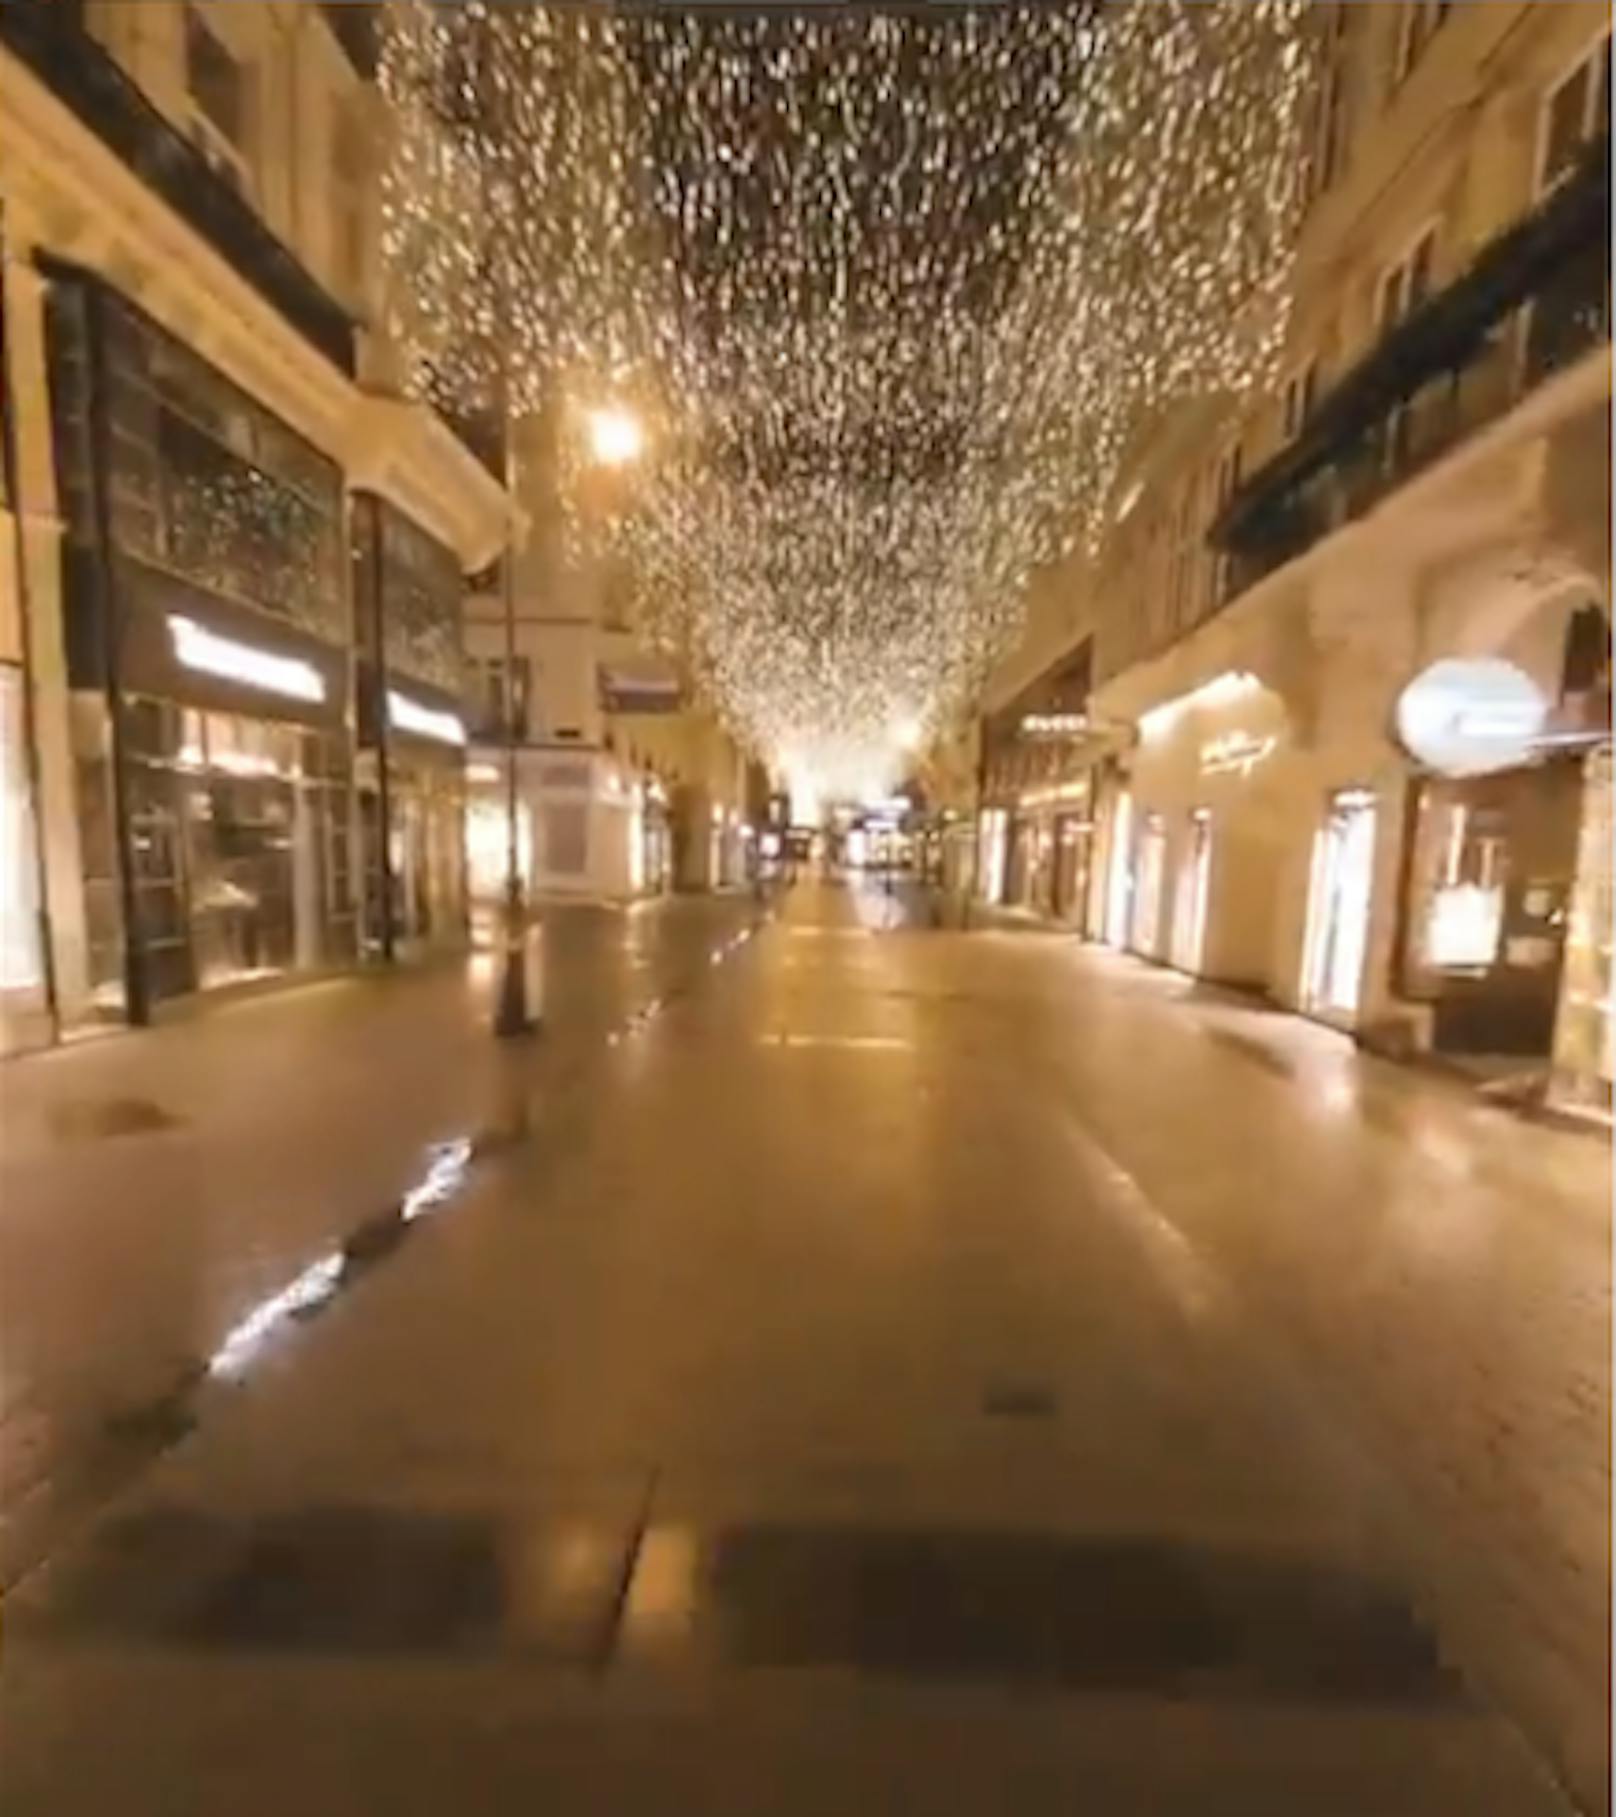 Festlich, aber leer: In einem Video fing Drohnenpilot Jan Widowitz die festlich geschmückte City in den Nachtstunden ein.